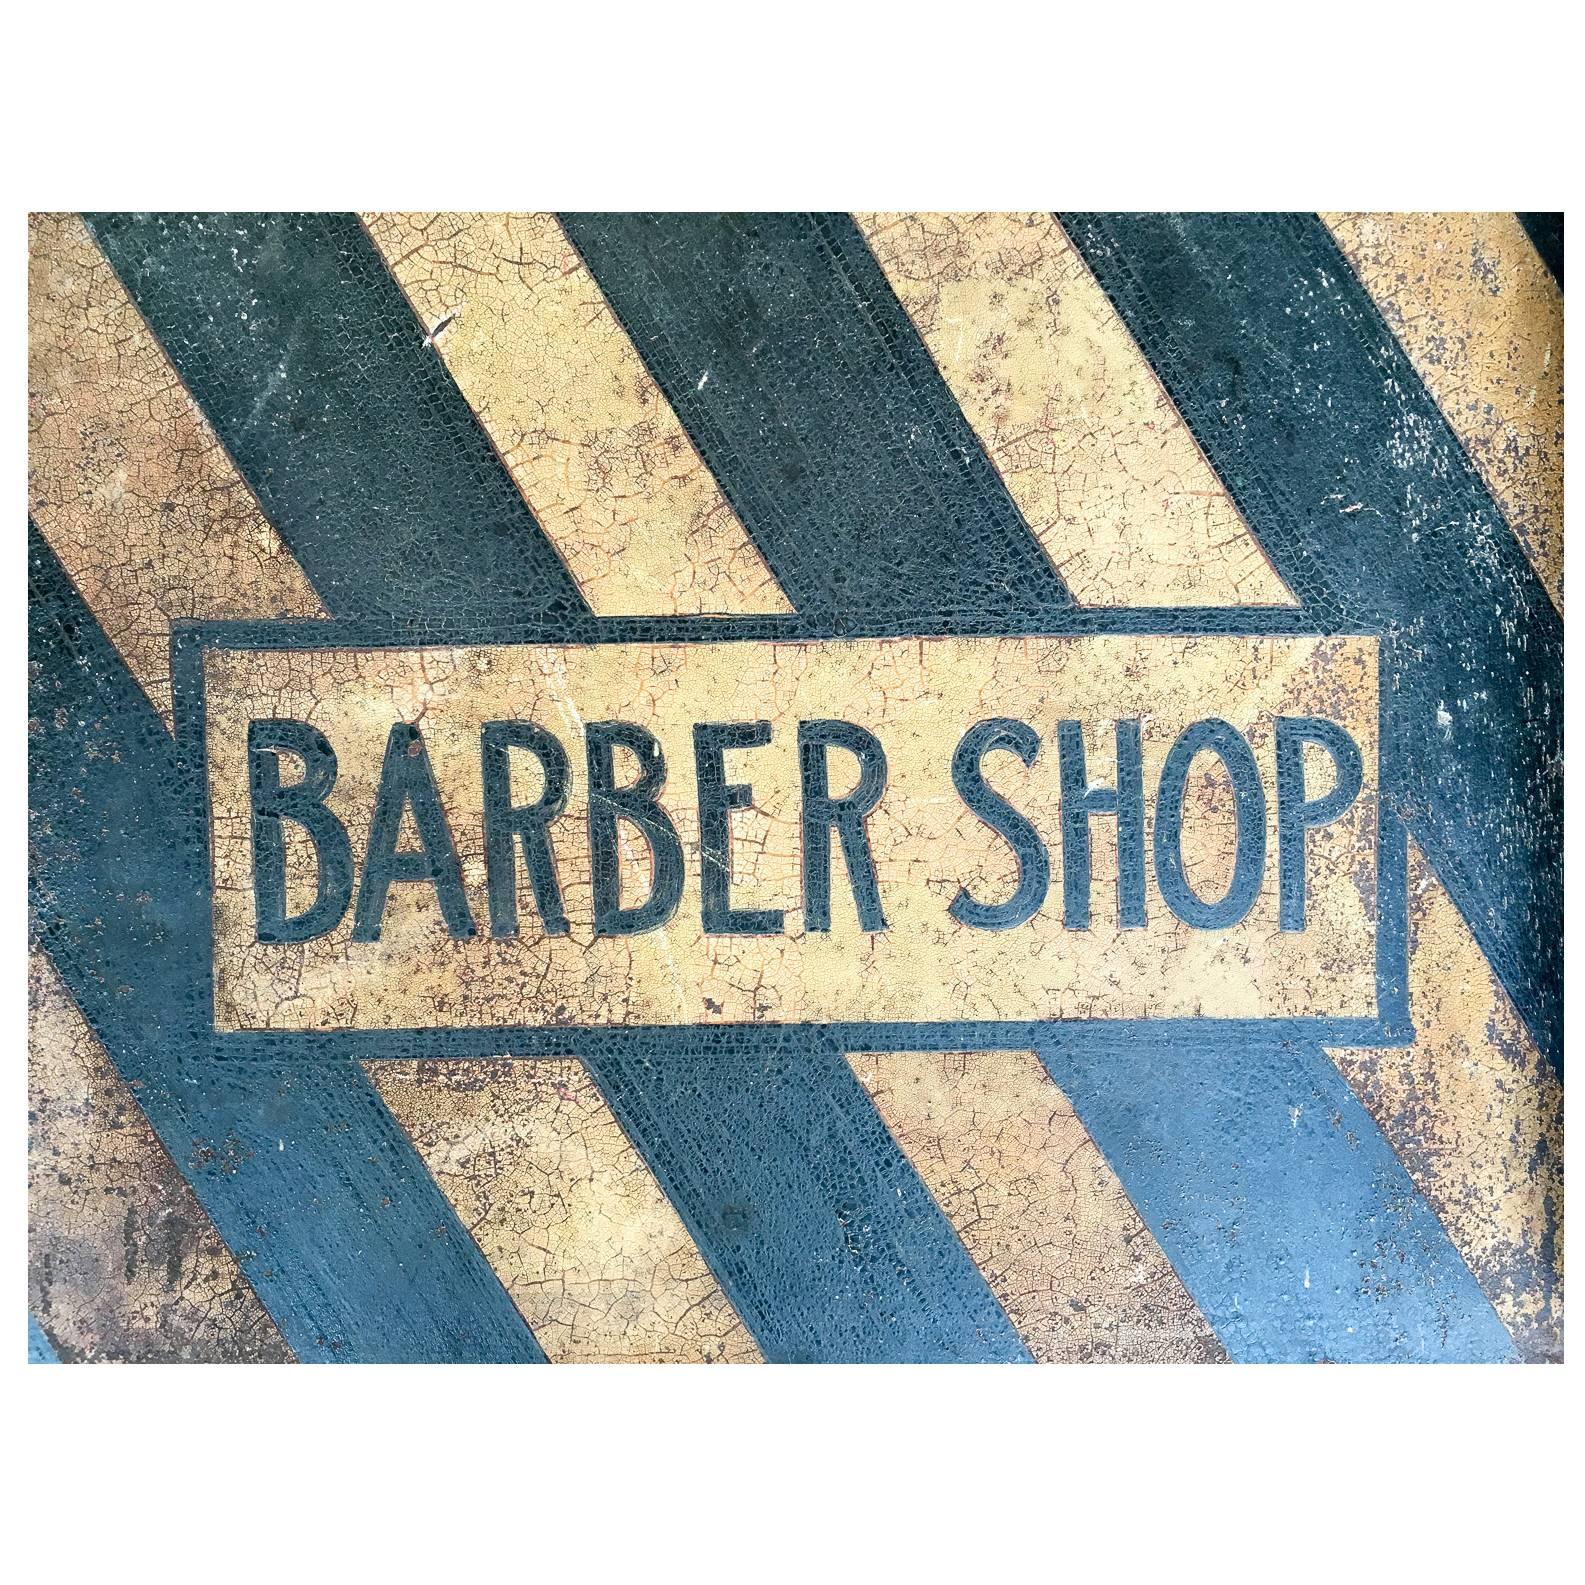 Metal Barber Shop Sign